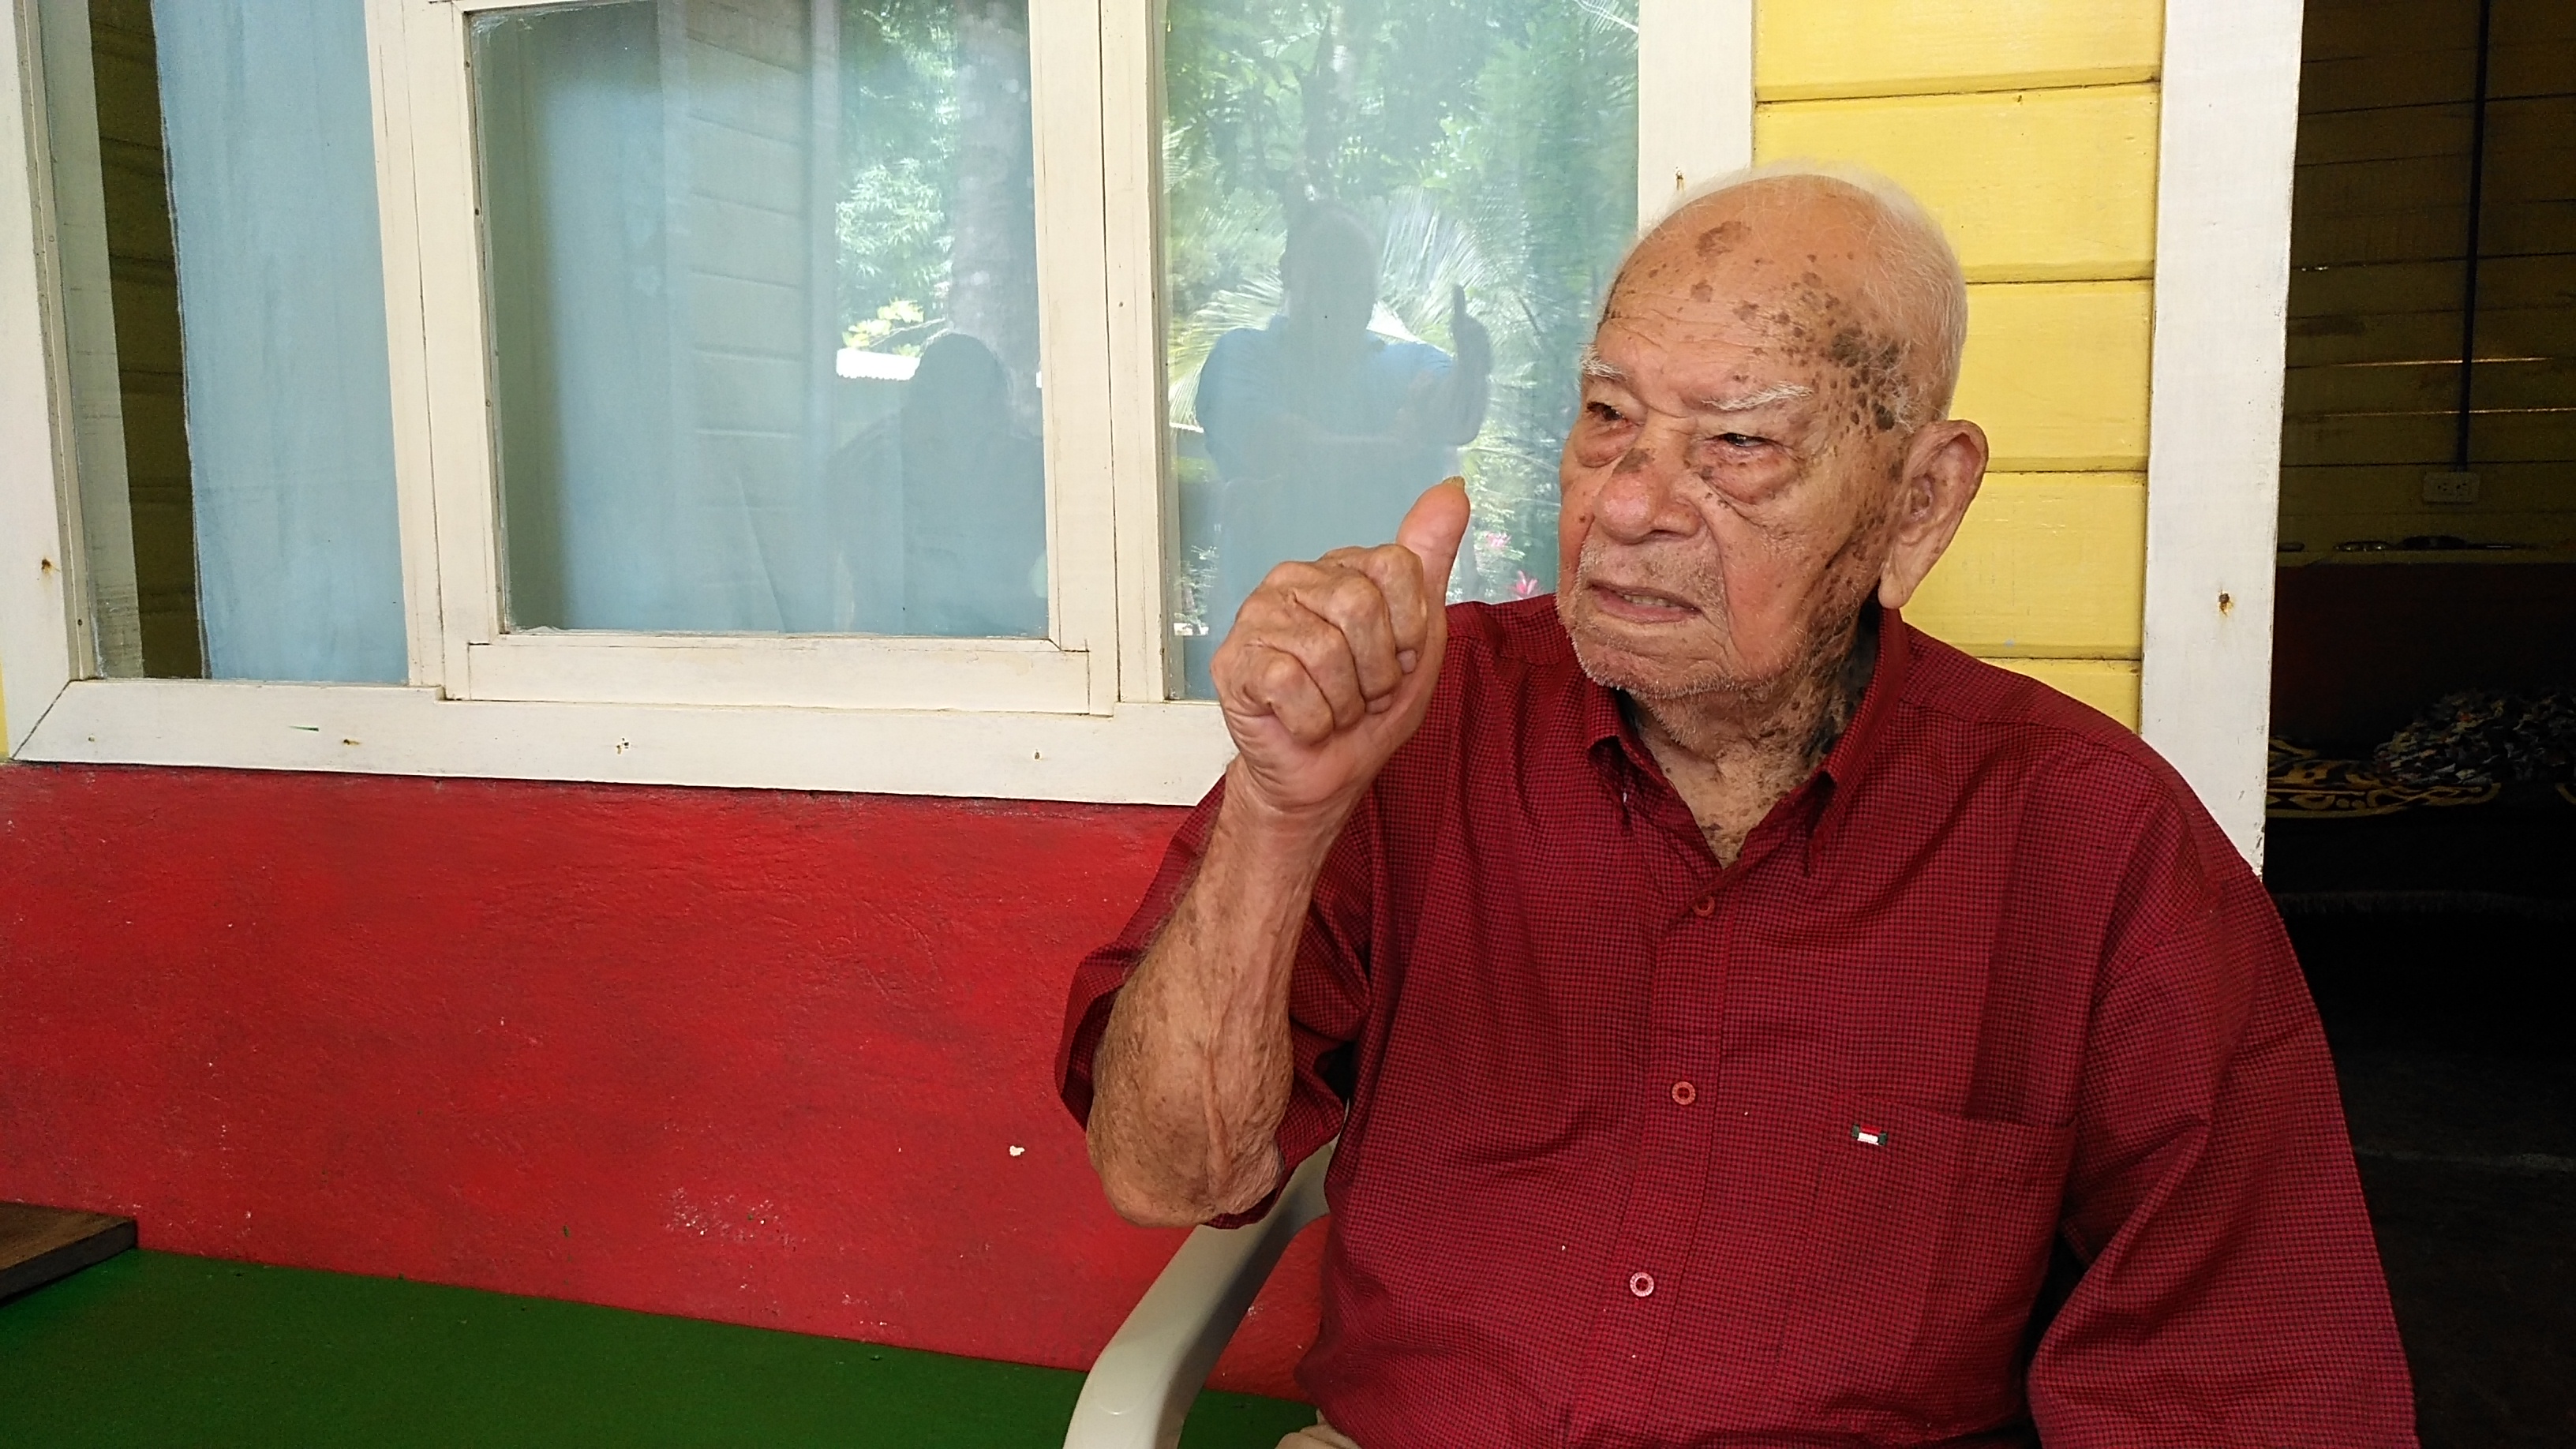 HOJANCHA: Con 102 años, don José sabe cómo mantenerse como un roble